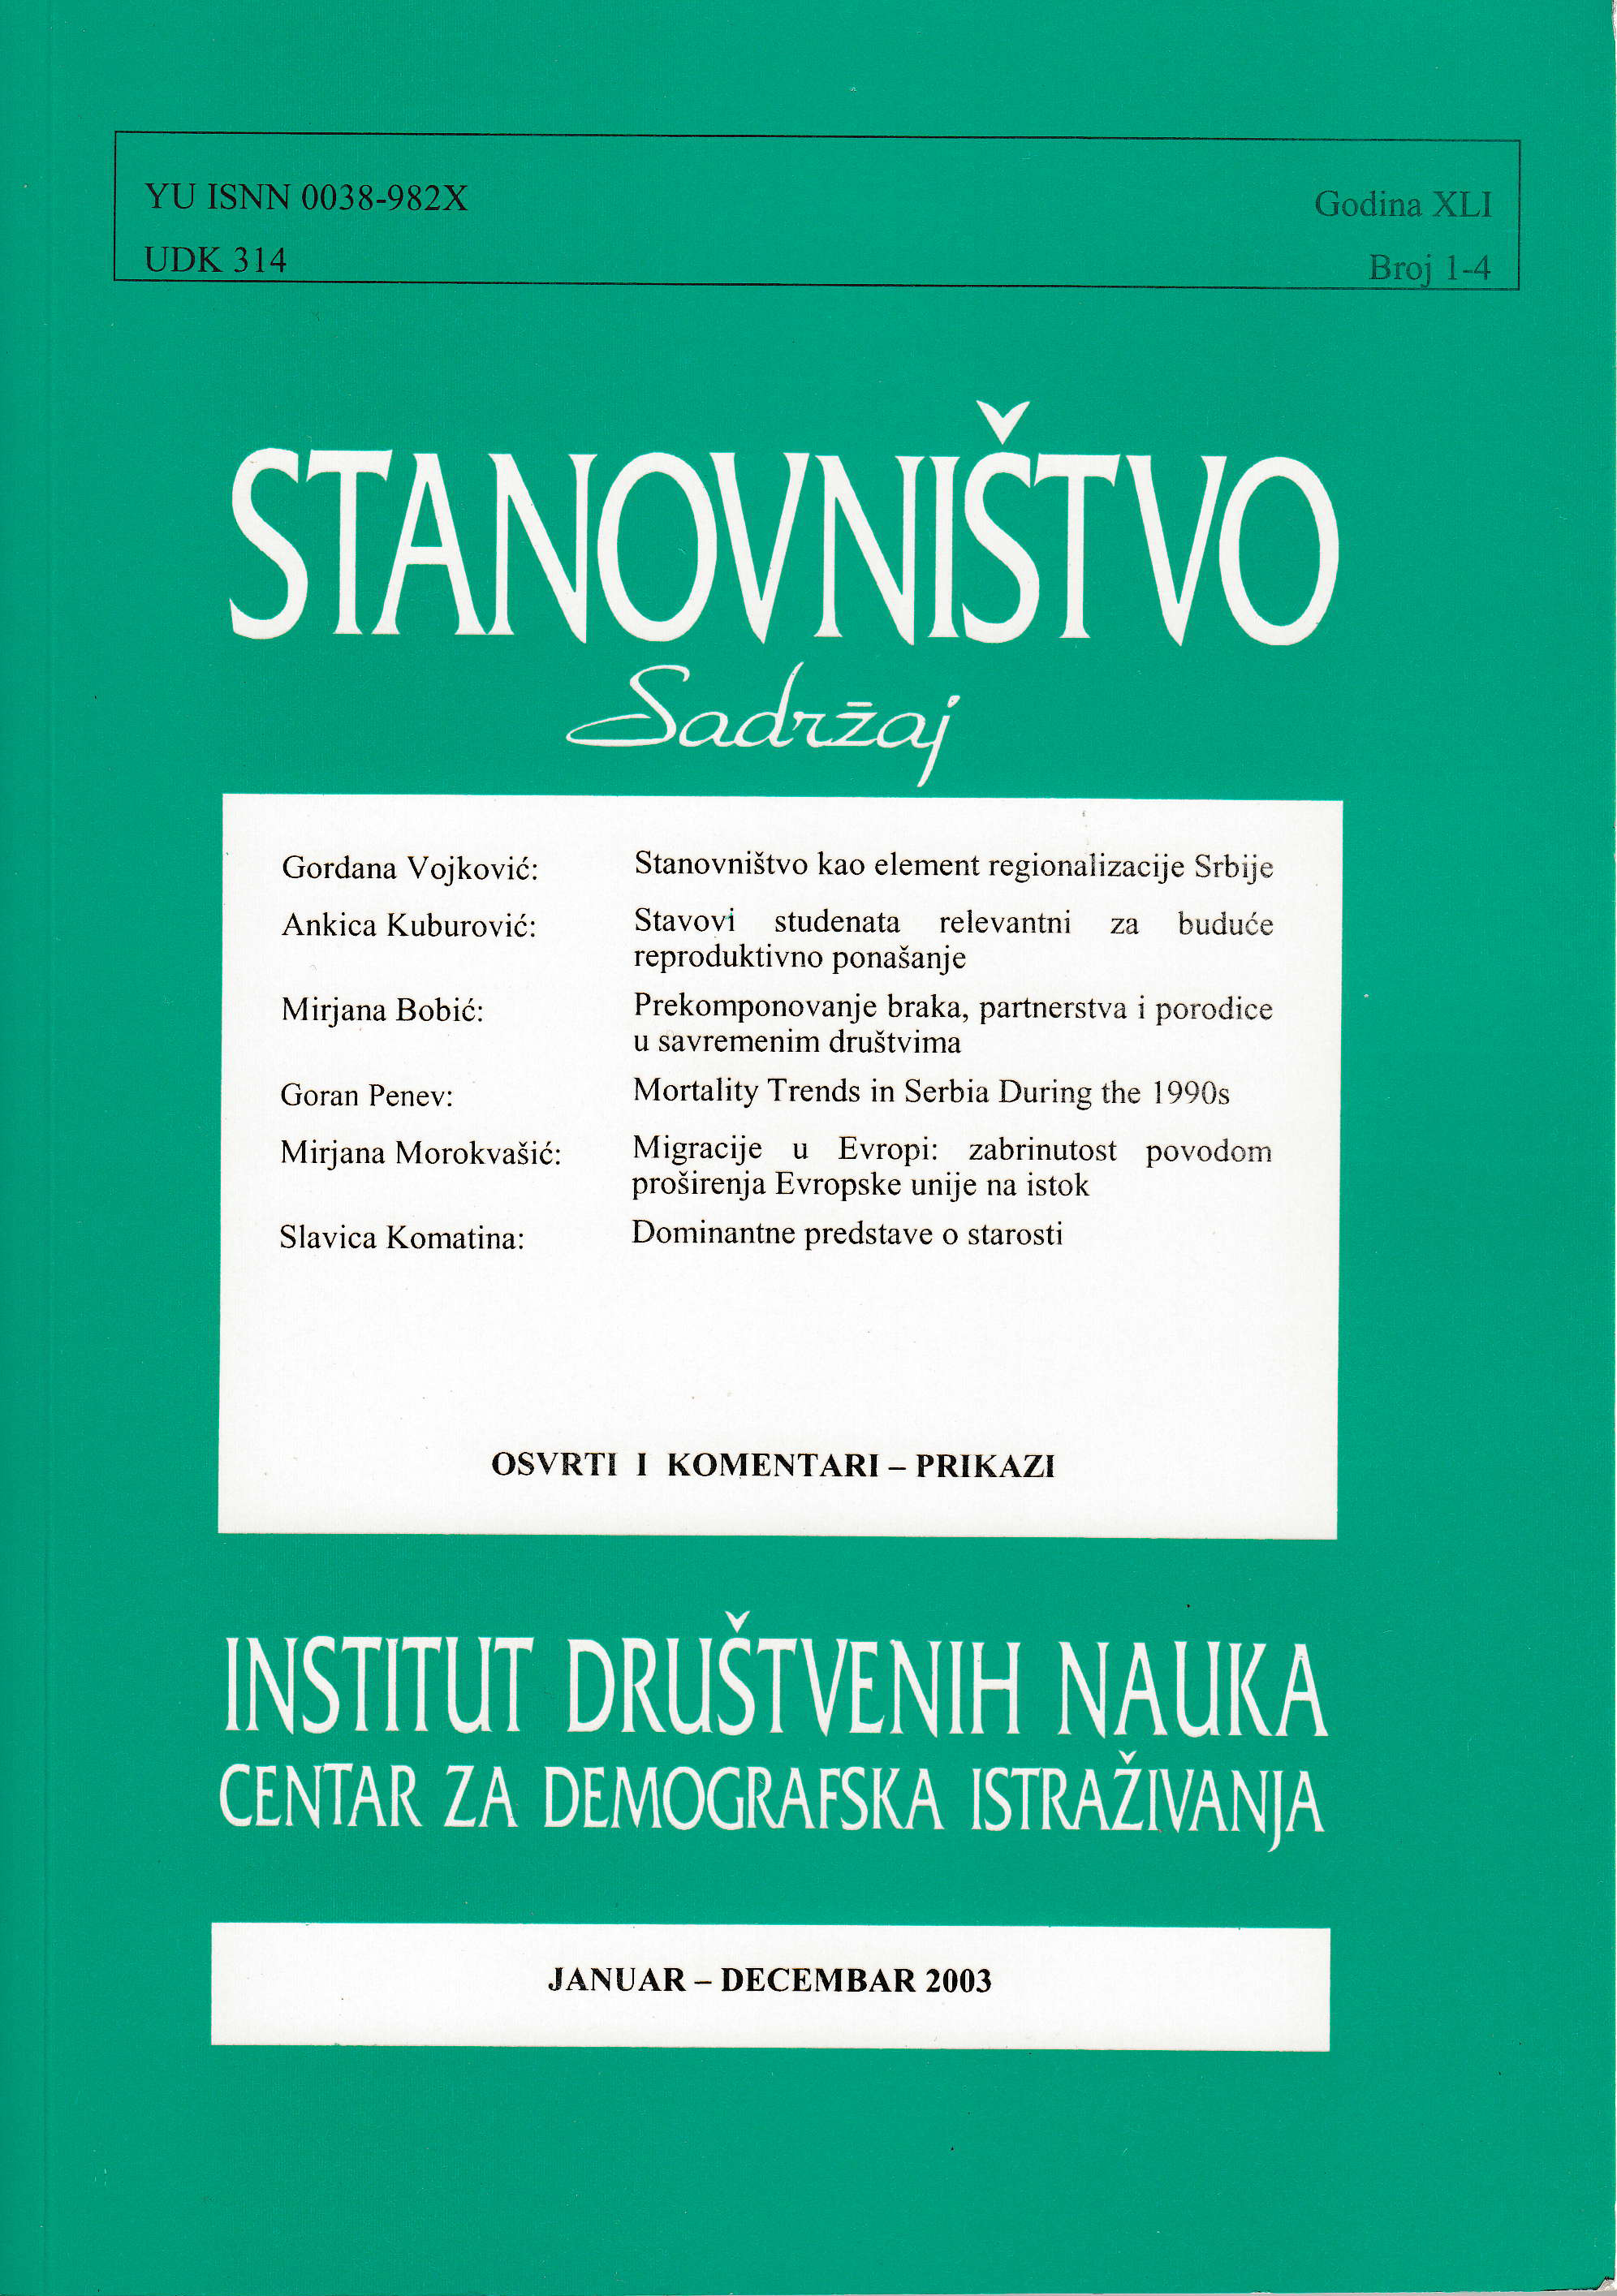 Trendovi mortaliteta u Srbiji tokom 1990-ih godina Cover Image